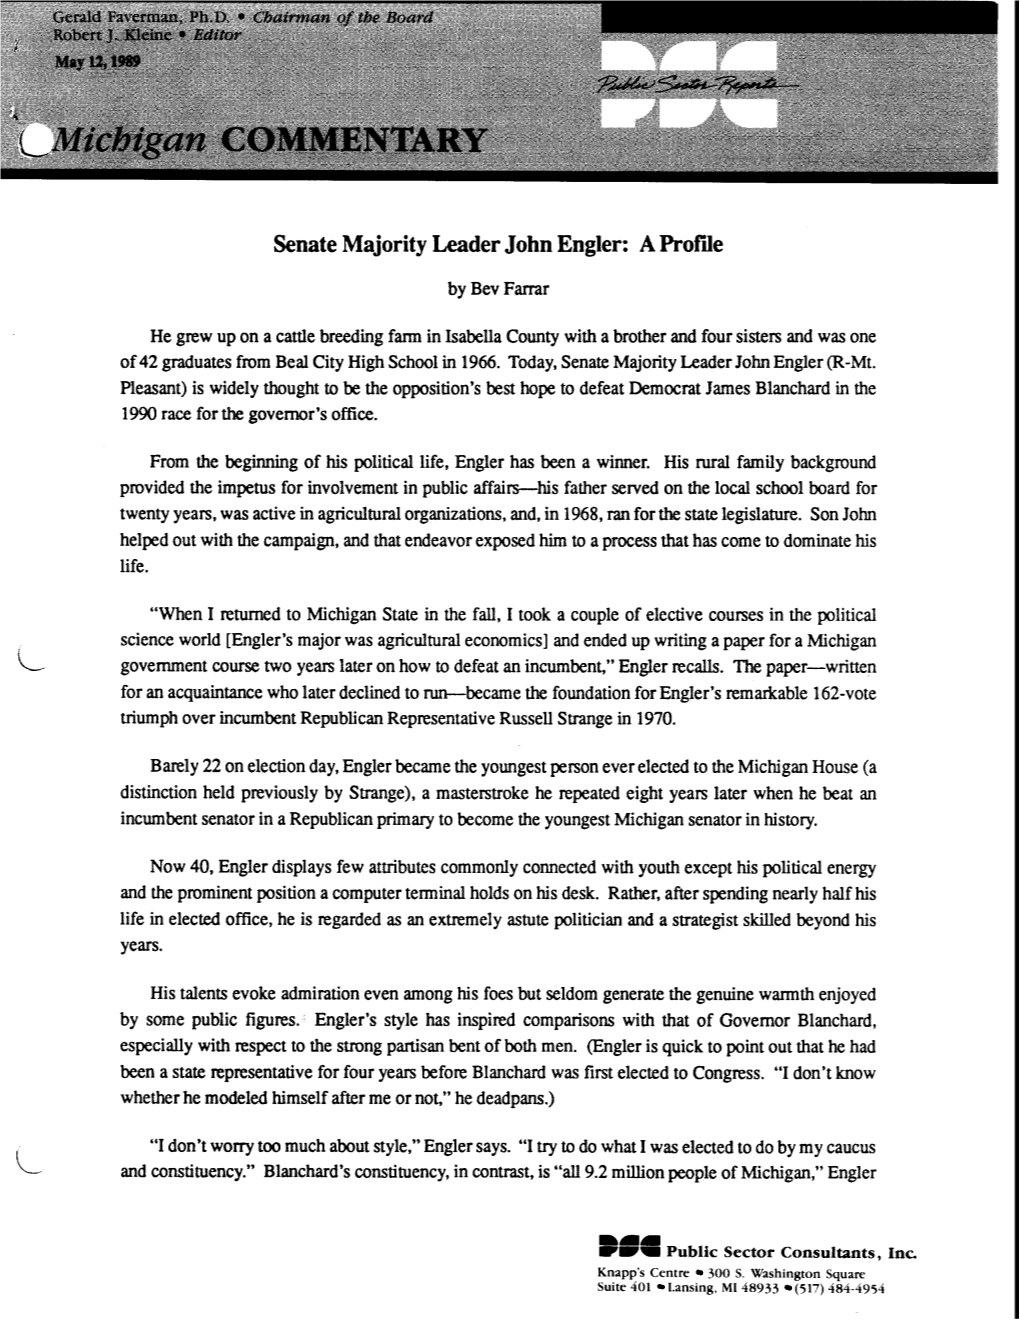 Senate Majority Leader John Engler: a Profile